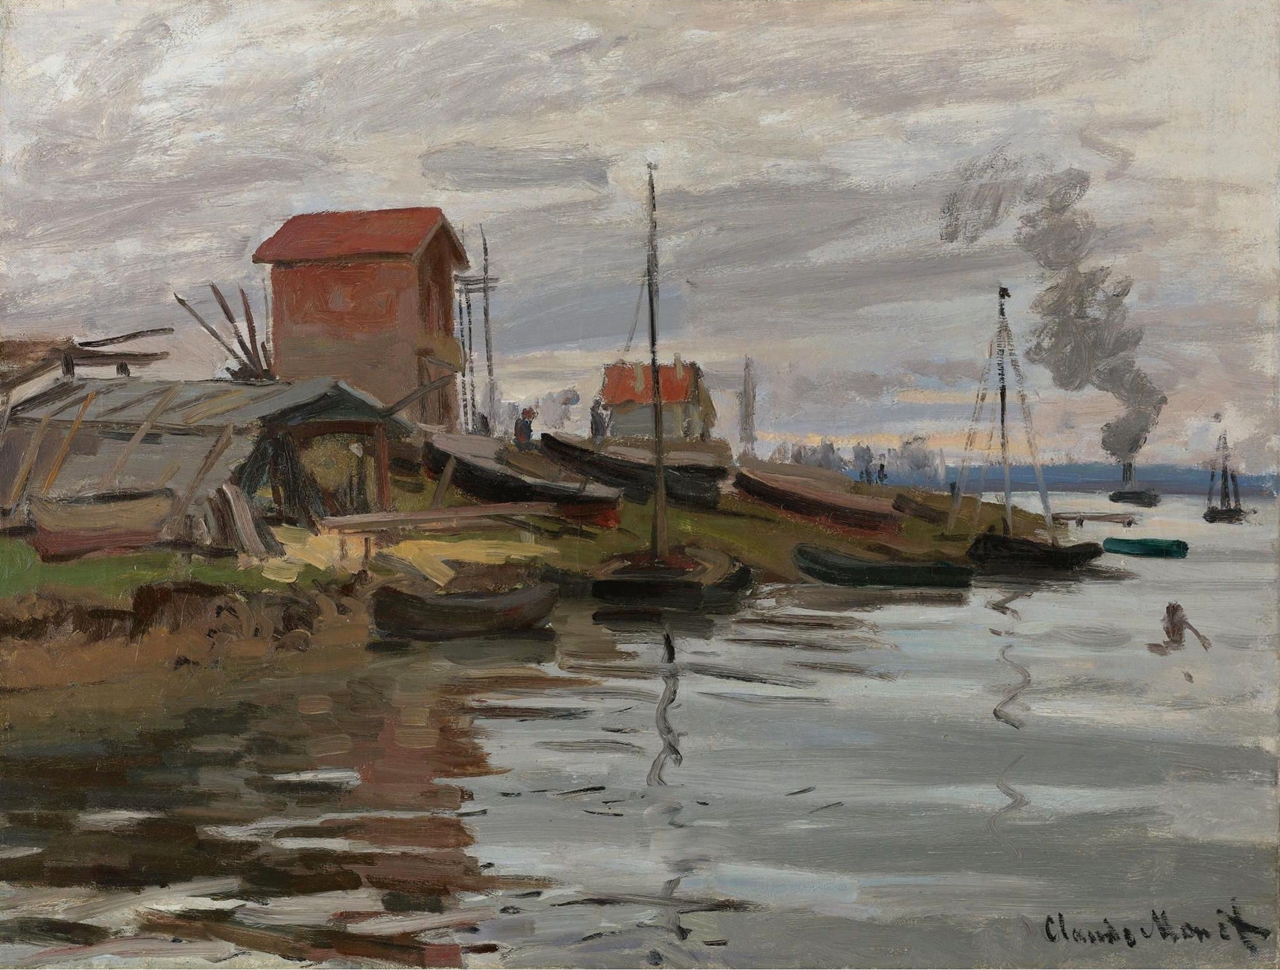 Claude+Monet-1840-1926 (675).jpeg